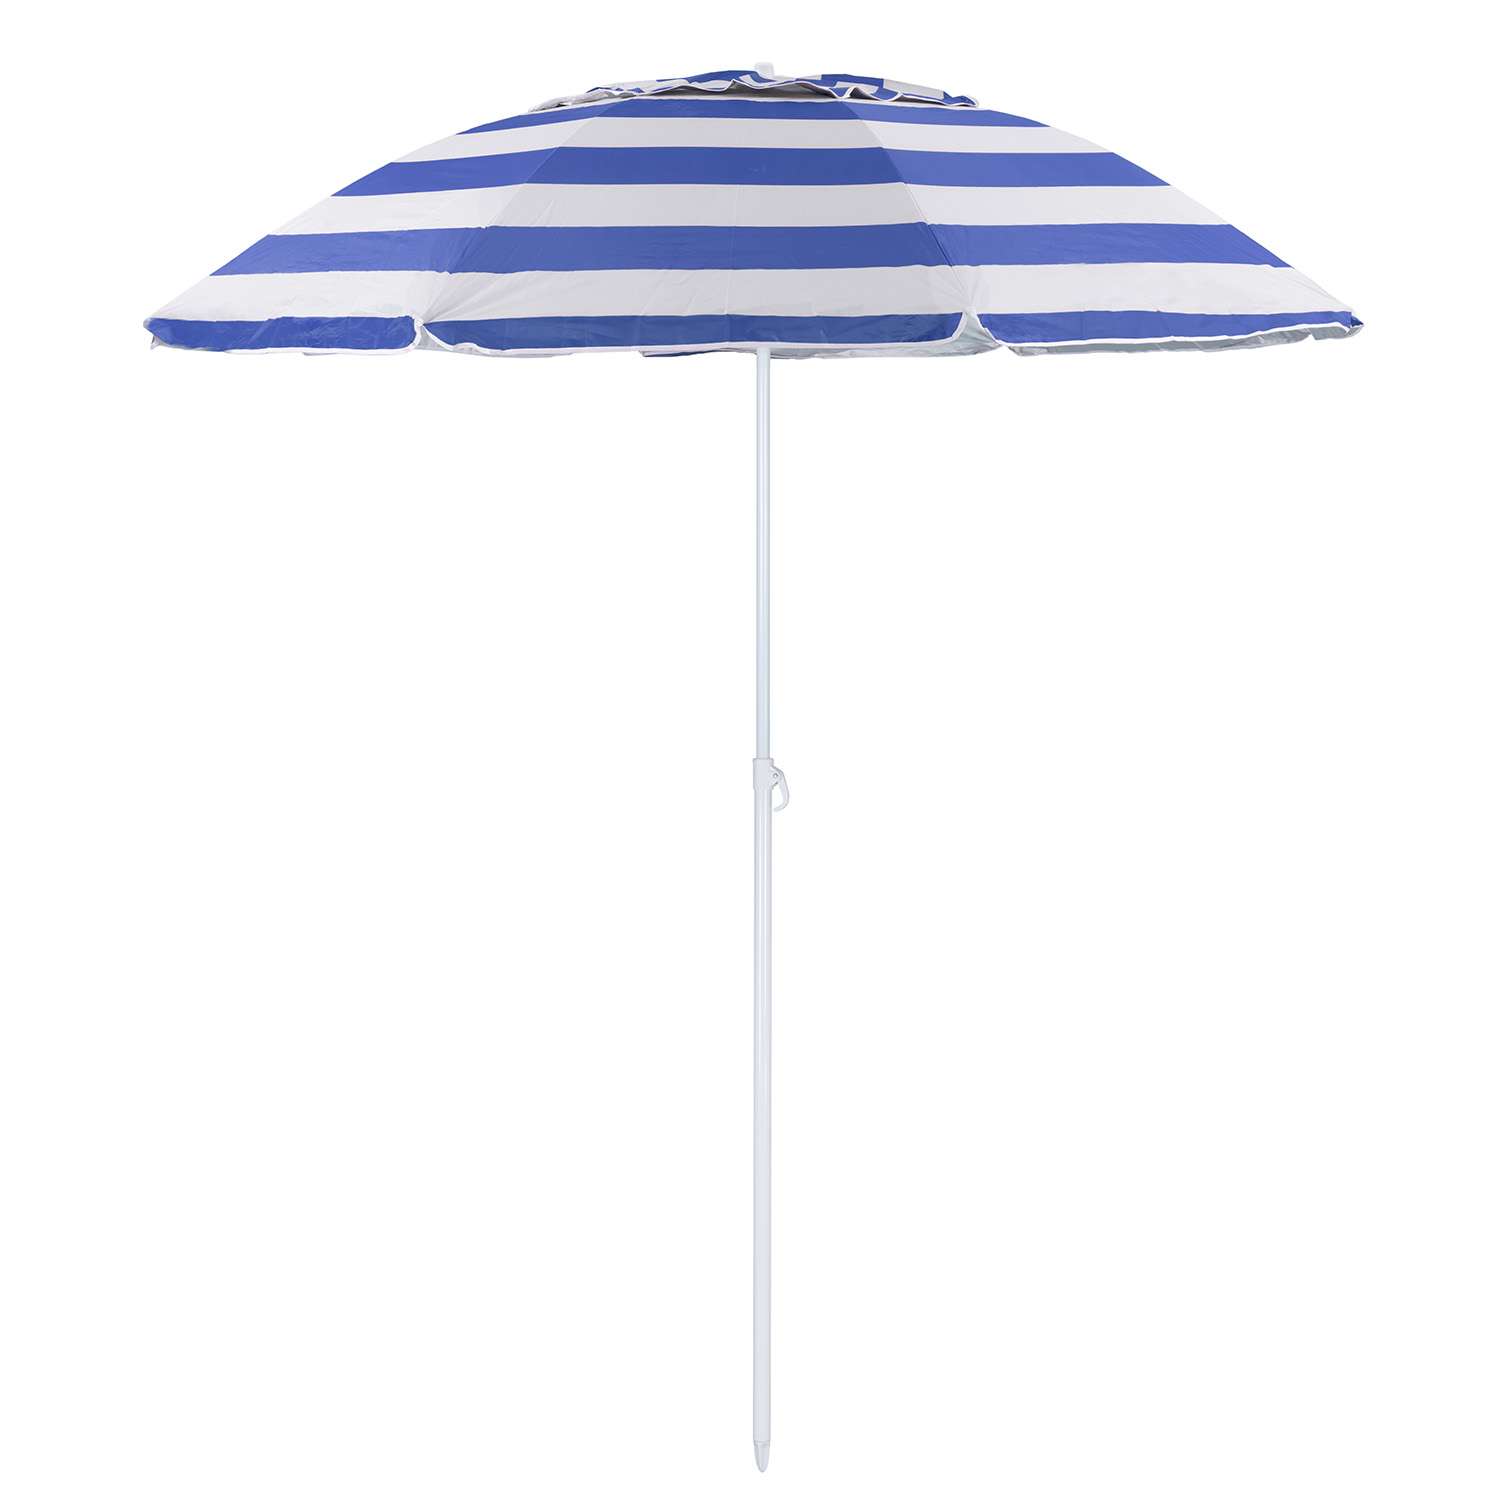 Зонт пляжный BABY STYLE солнцезащитный зонт большой садовый с клапаном 2.2 м синий - фото 1